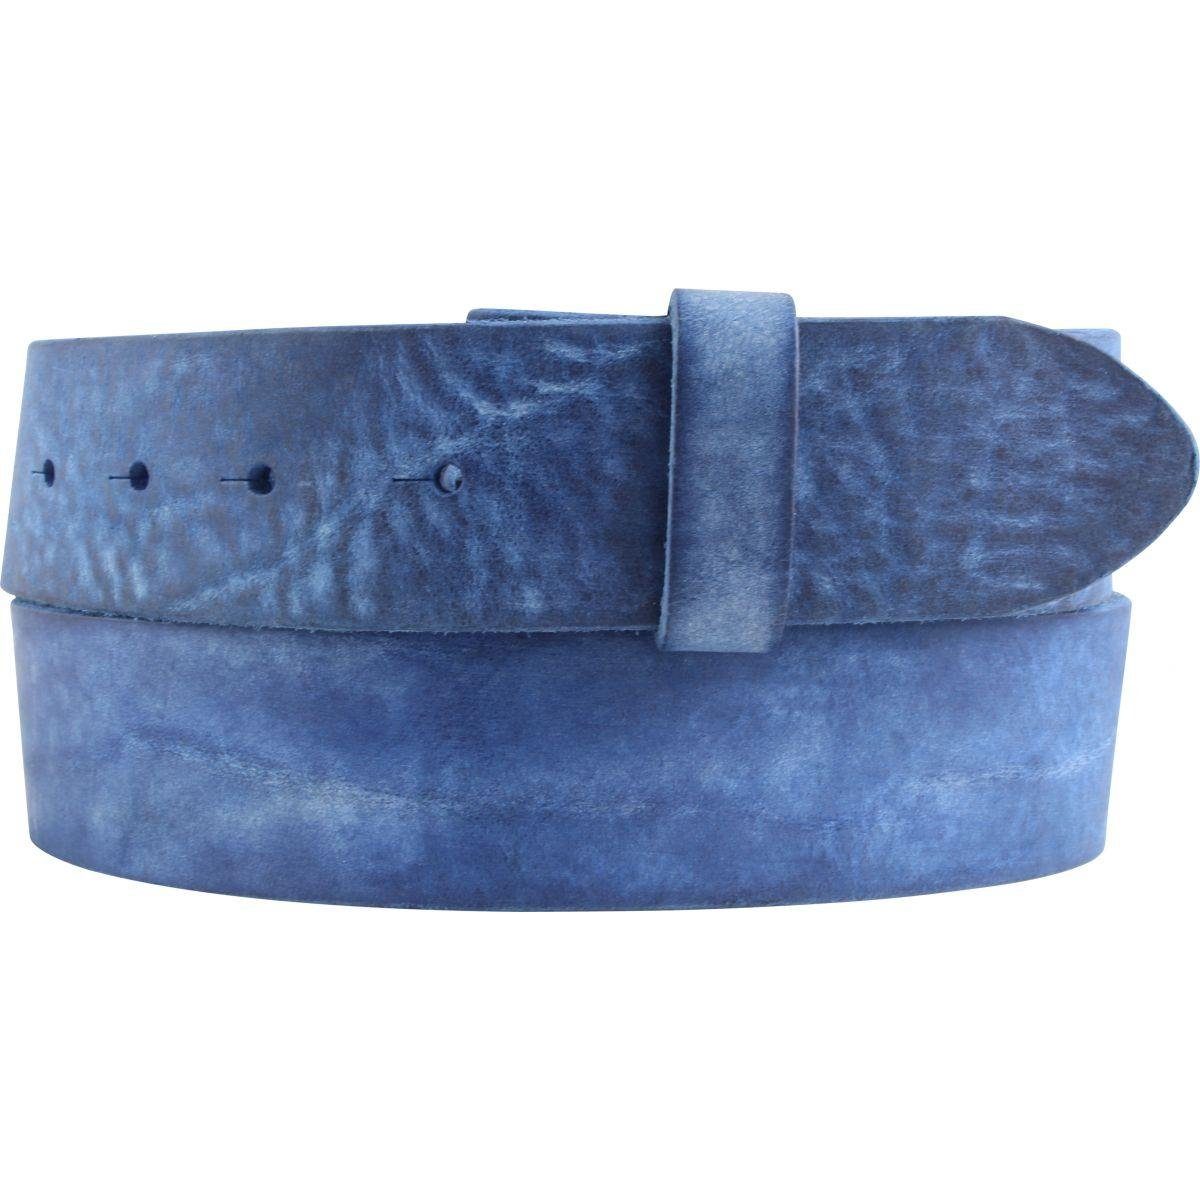 BELTINGER Ledergürtel Gürtel aus weichem Vollrindleder Jeans- Blau - cm 4 ohne Used-Look Schnalle